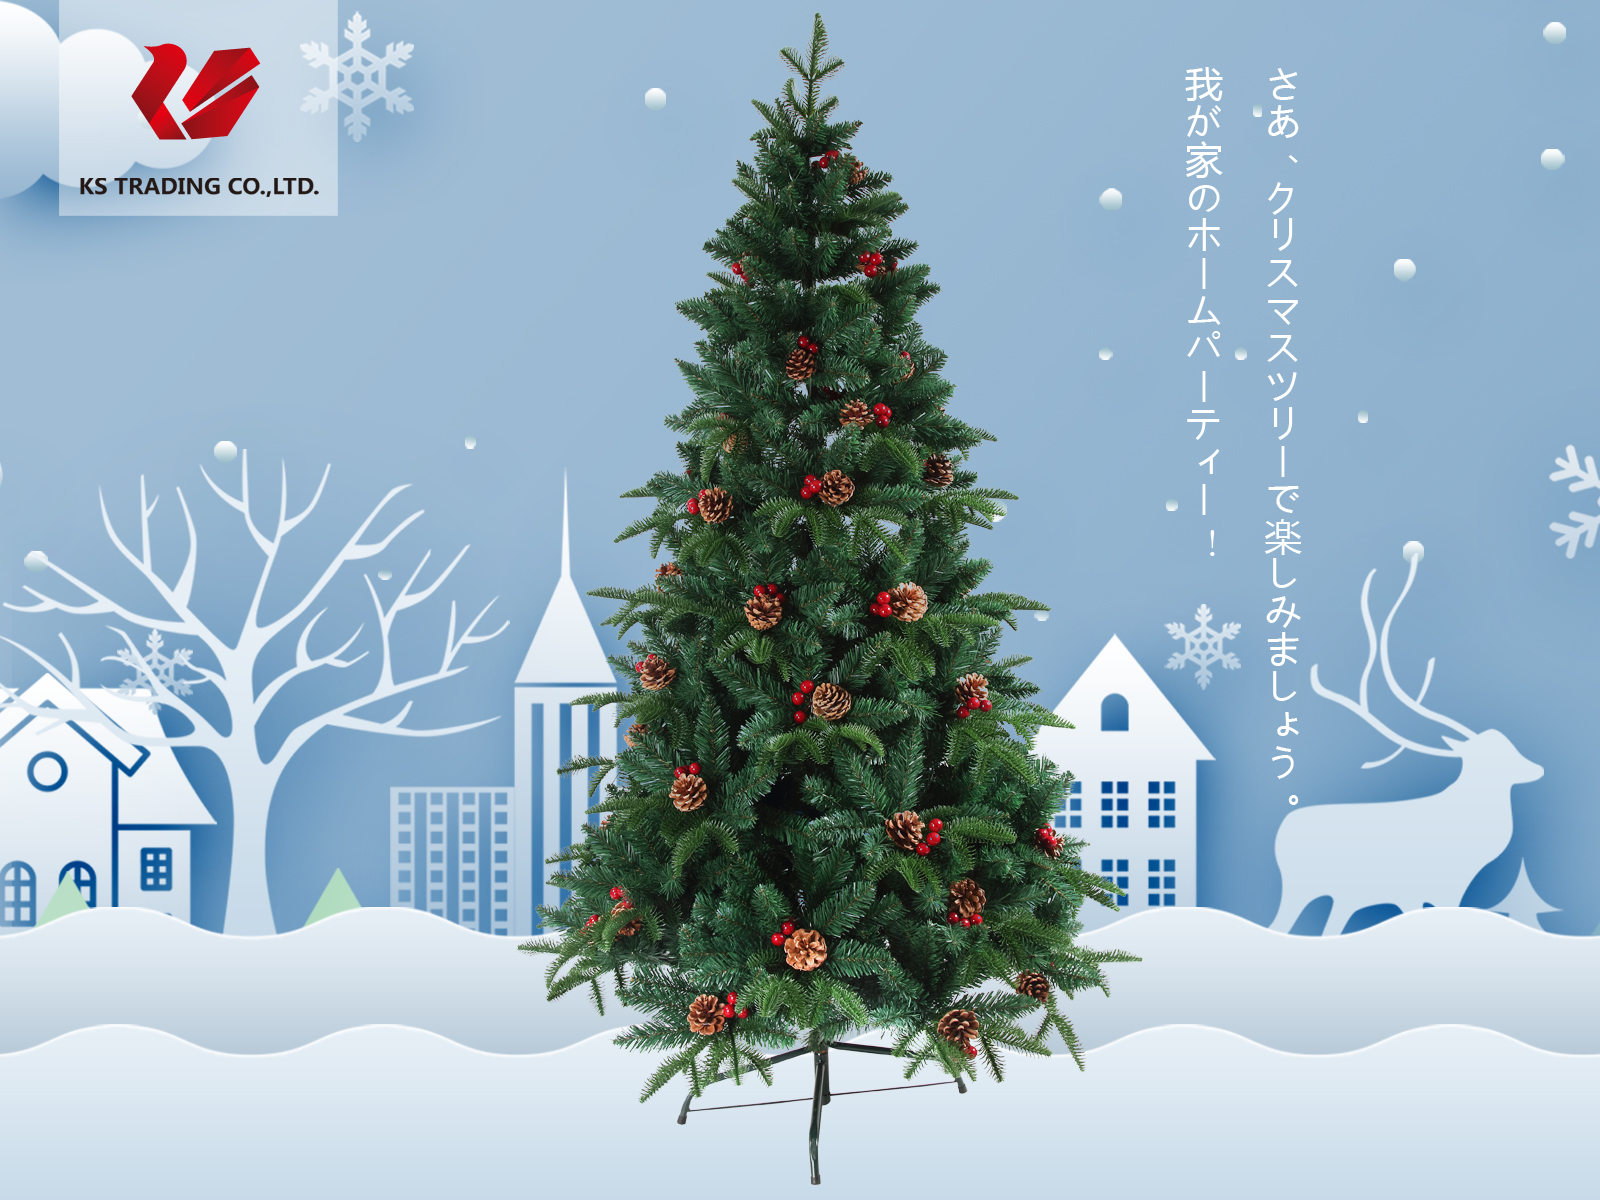 楽天市場 クリスマスツリー 枝大幅増量タイプ 松ぼっくり付き 赤い実付き 北欧風ツリー180cm Ksbm Kobe Store